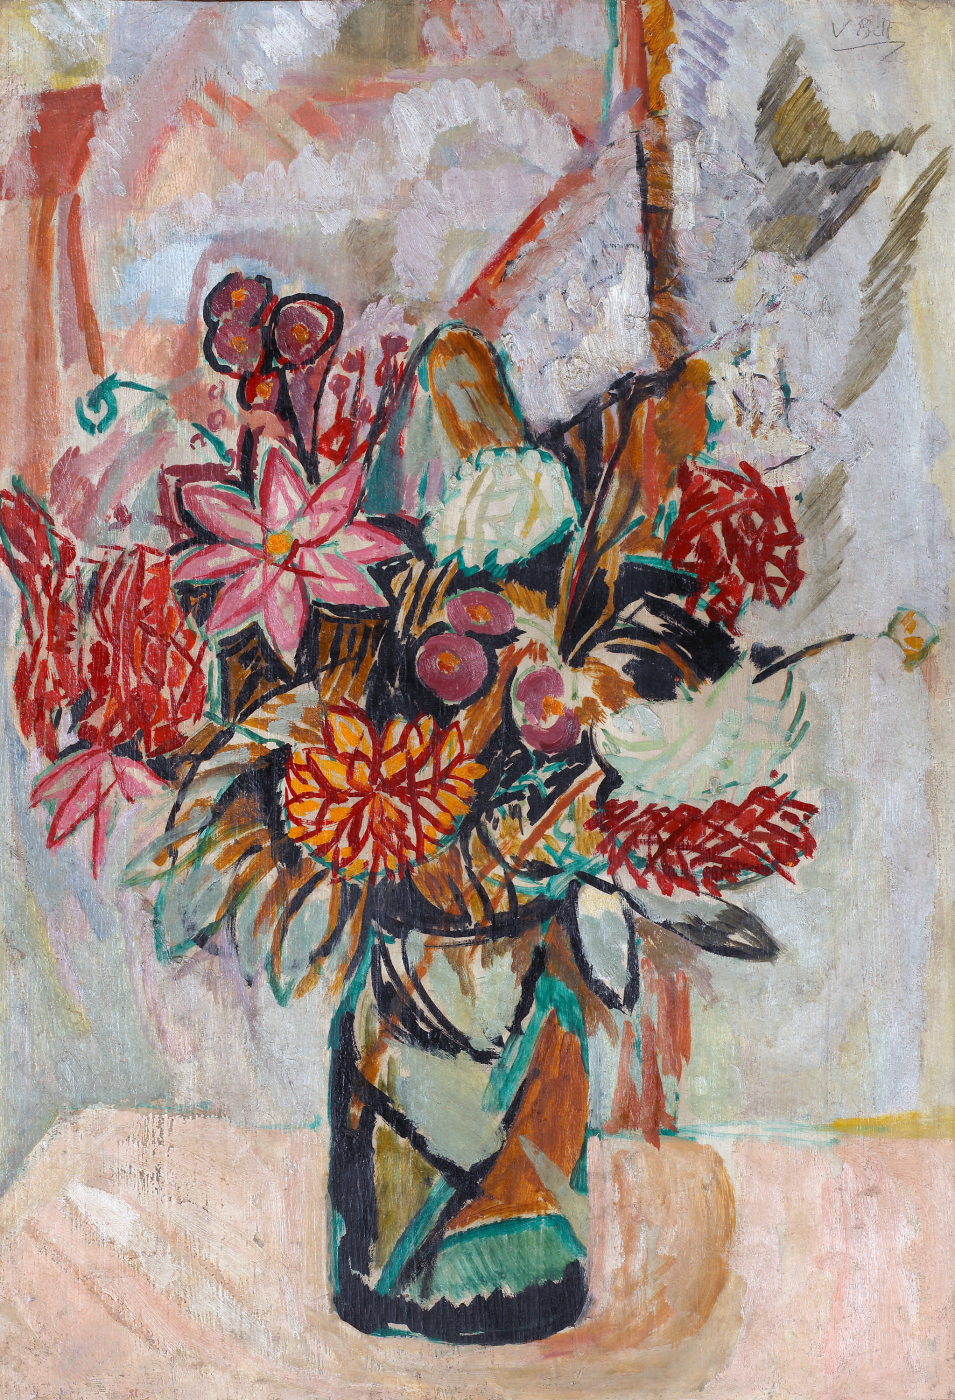 Still life of flowers by Vanessa Bell